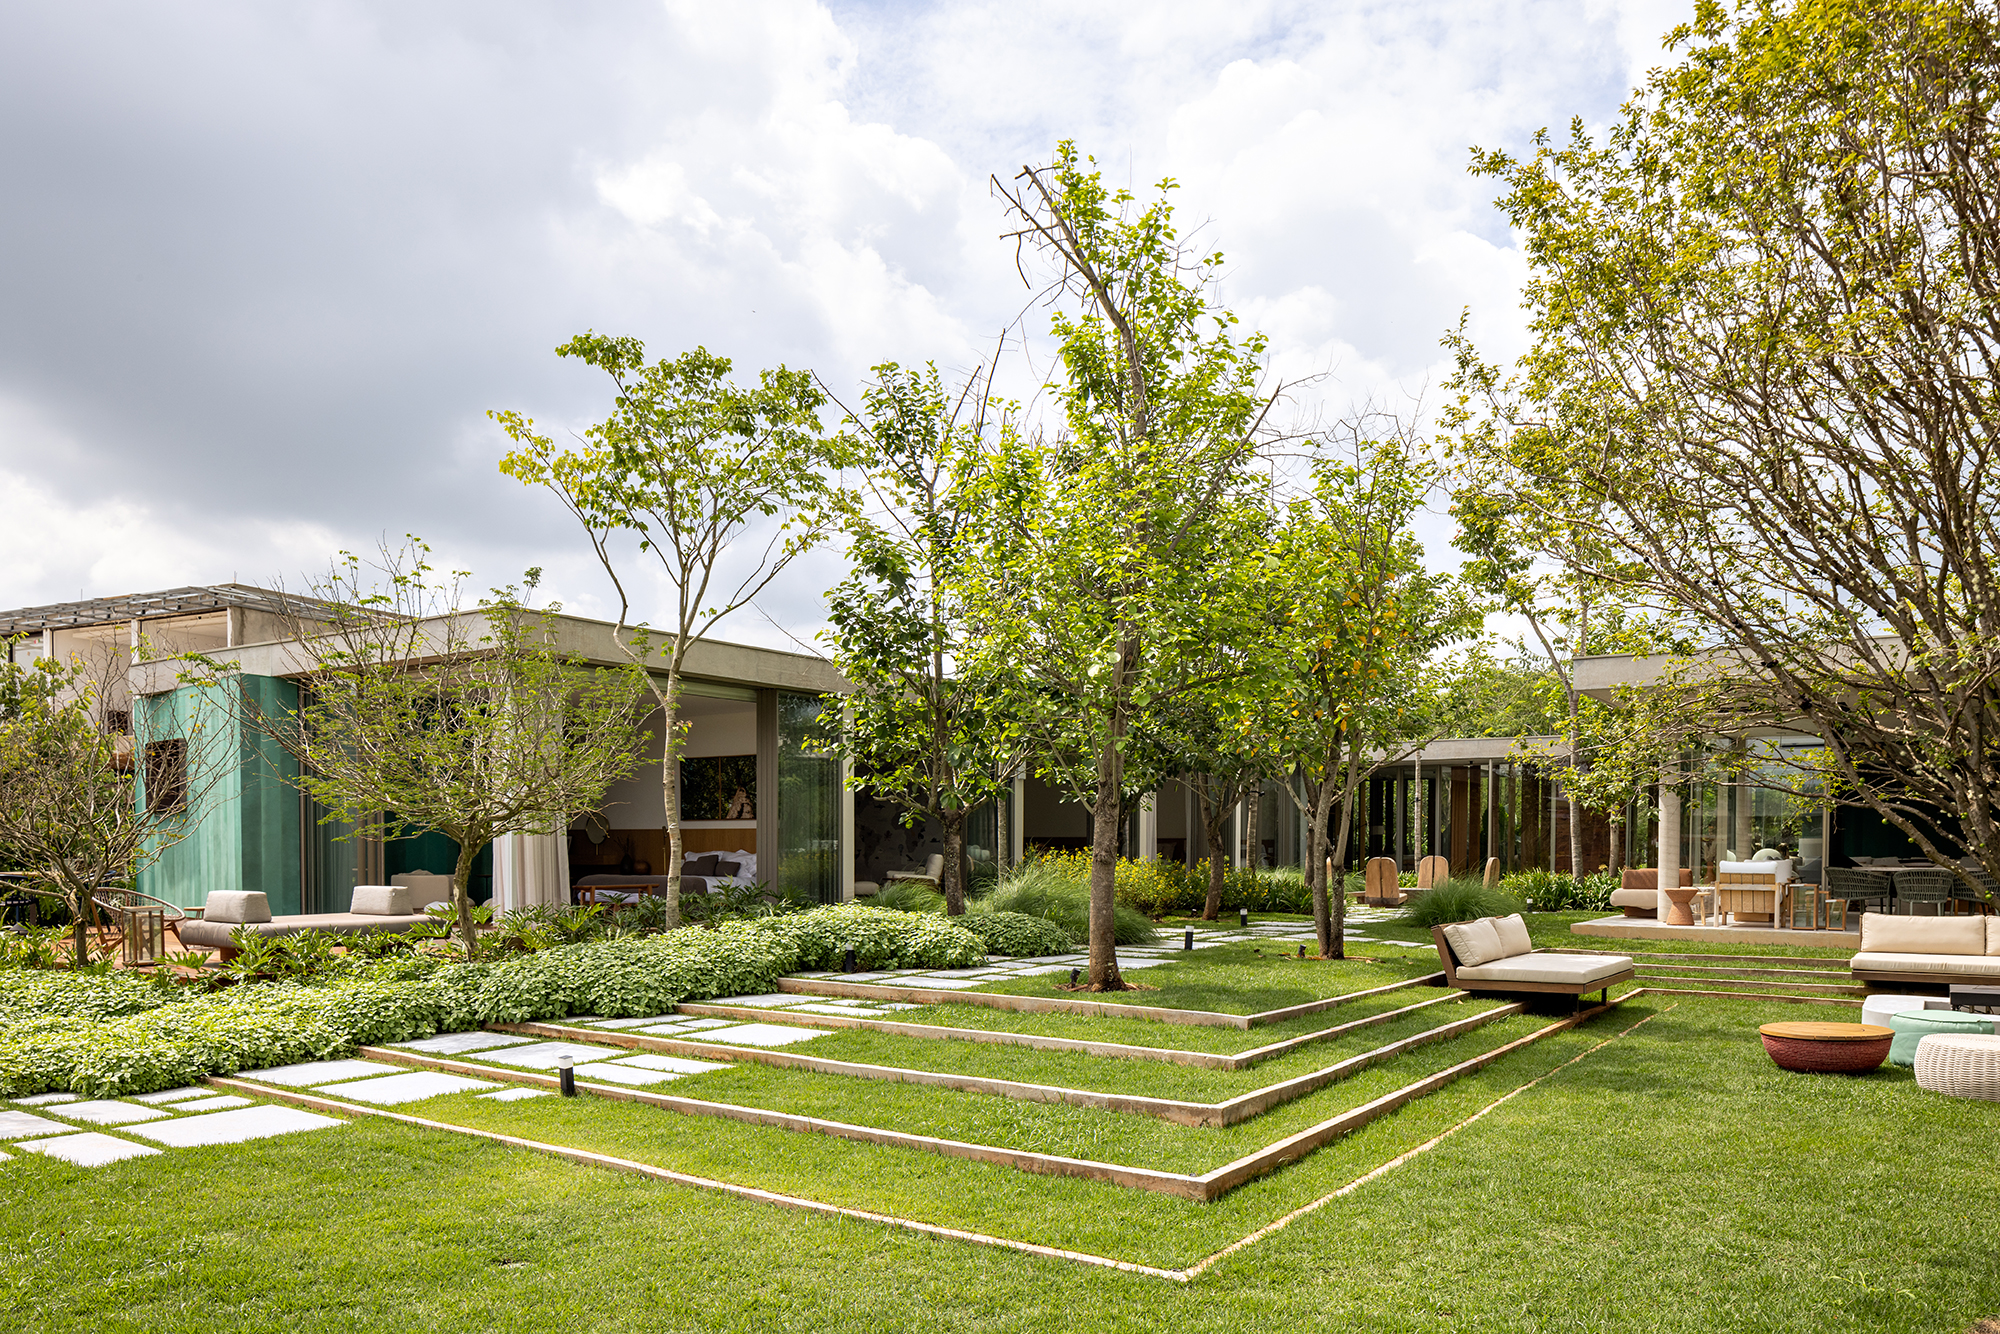 Placas de cobre oxidado e vidro integram esta casa de 653 m² à natureza, Projeto de FGMF. Na foto, fachada da casa com jardim.